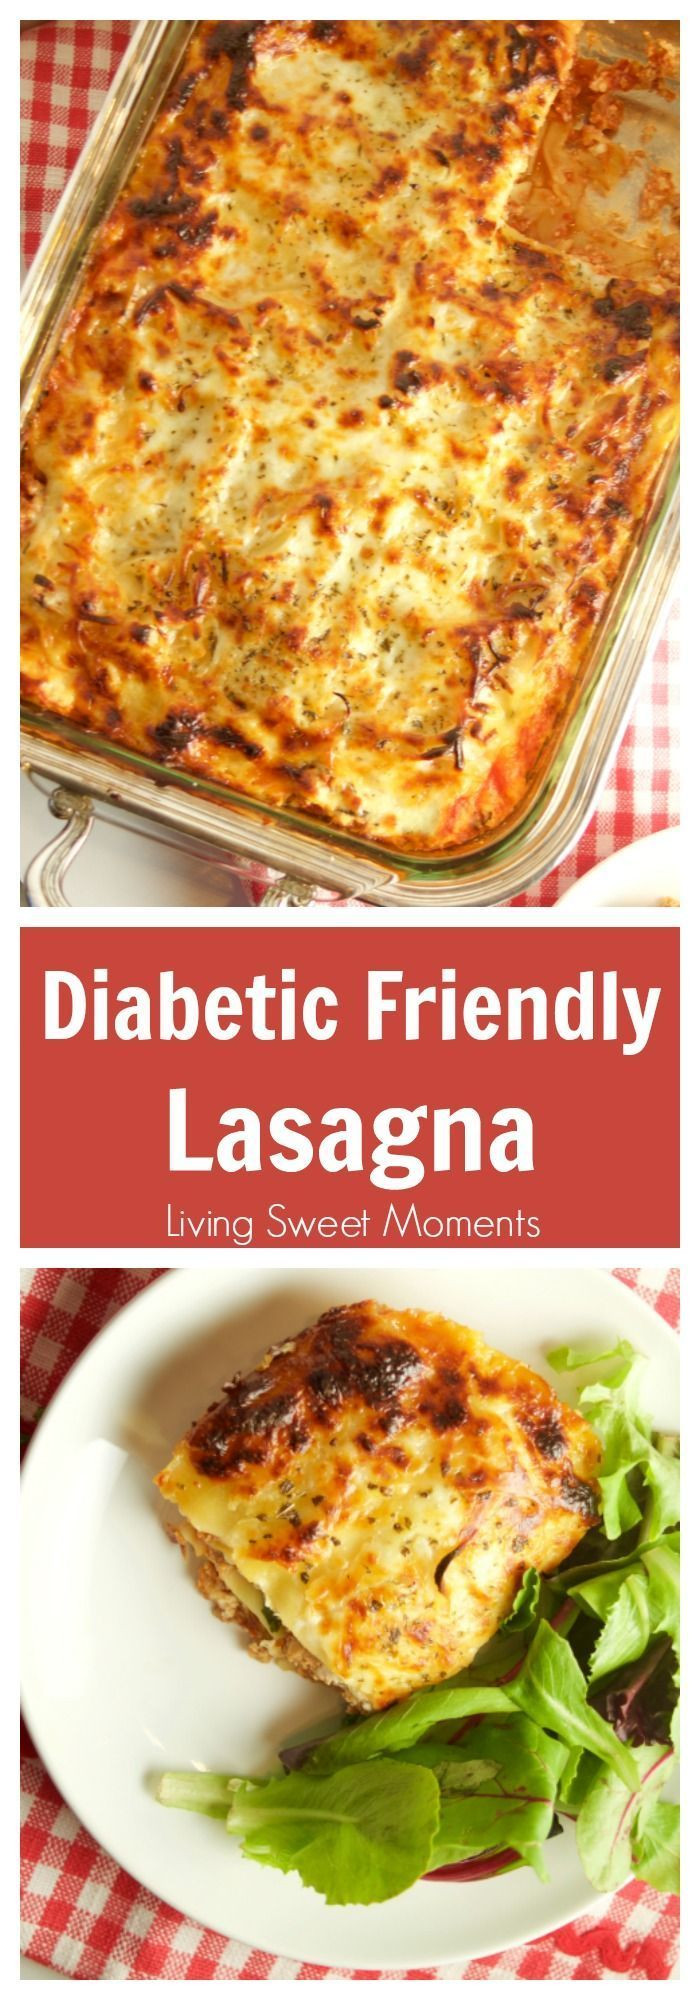 Diabetic Thanksgiving Dinners
 100 Diabetic Dinner Recipes on Pinterest